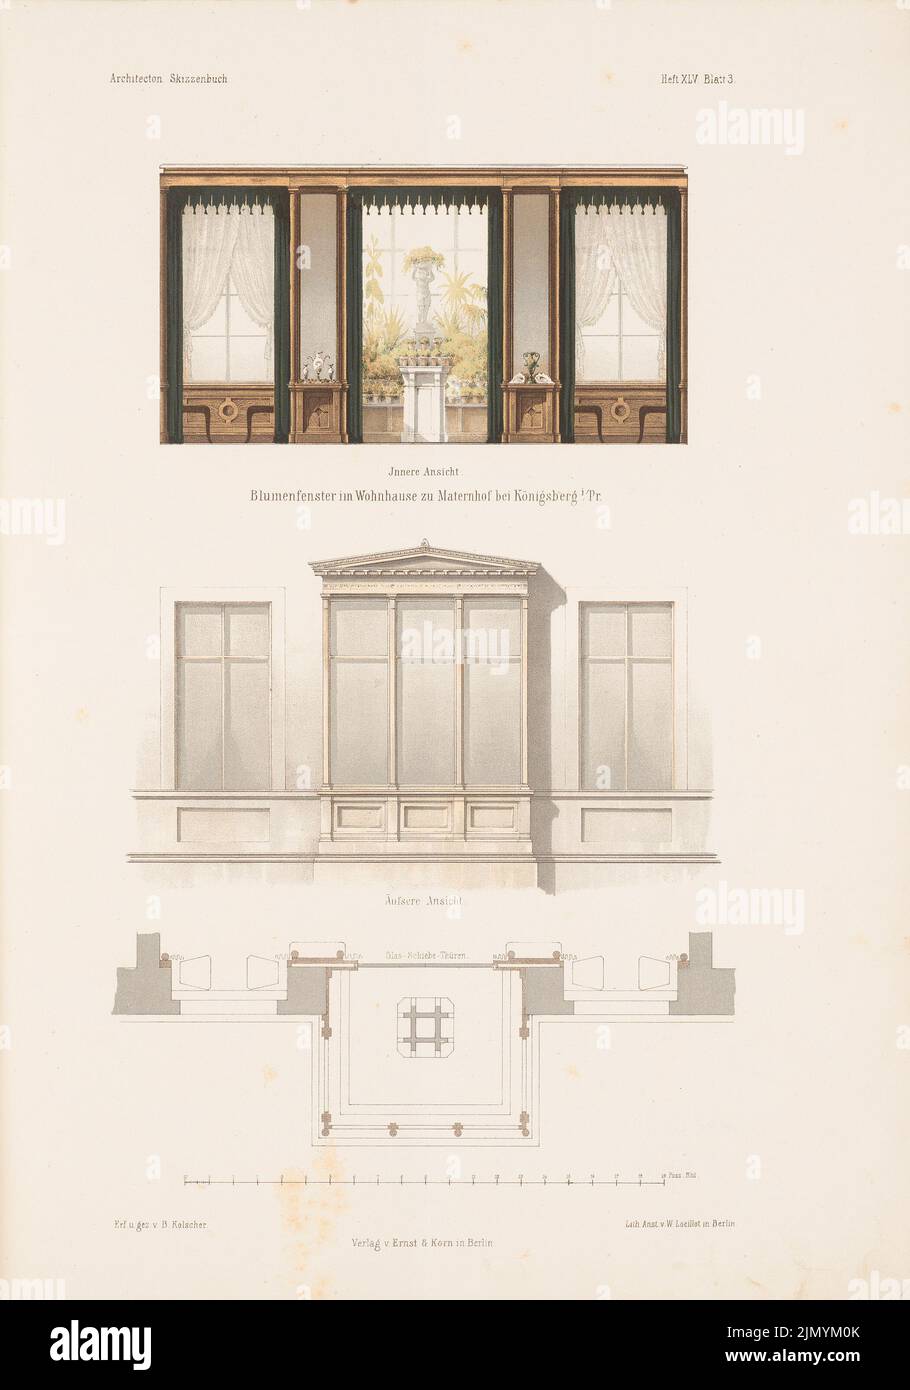 Kolscher Bernhard (1834-1868), fenêtre fleurie d'une maison, Maternhof. (De: Carnet d'esquisses architectural, H. 45/2, 1860.) (1860-1860): plan d'étage, vue, vue intérieure. Lithographie colorée sur papier, 35,1 x 24,5 cm (y compris les bords de numérisation) Banque D'Images